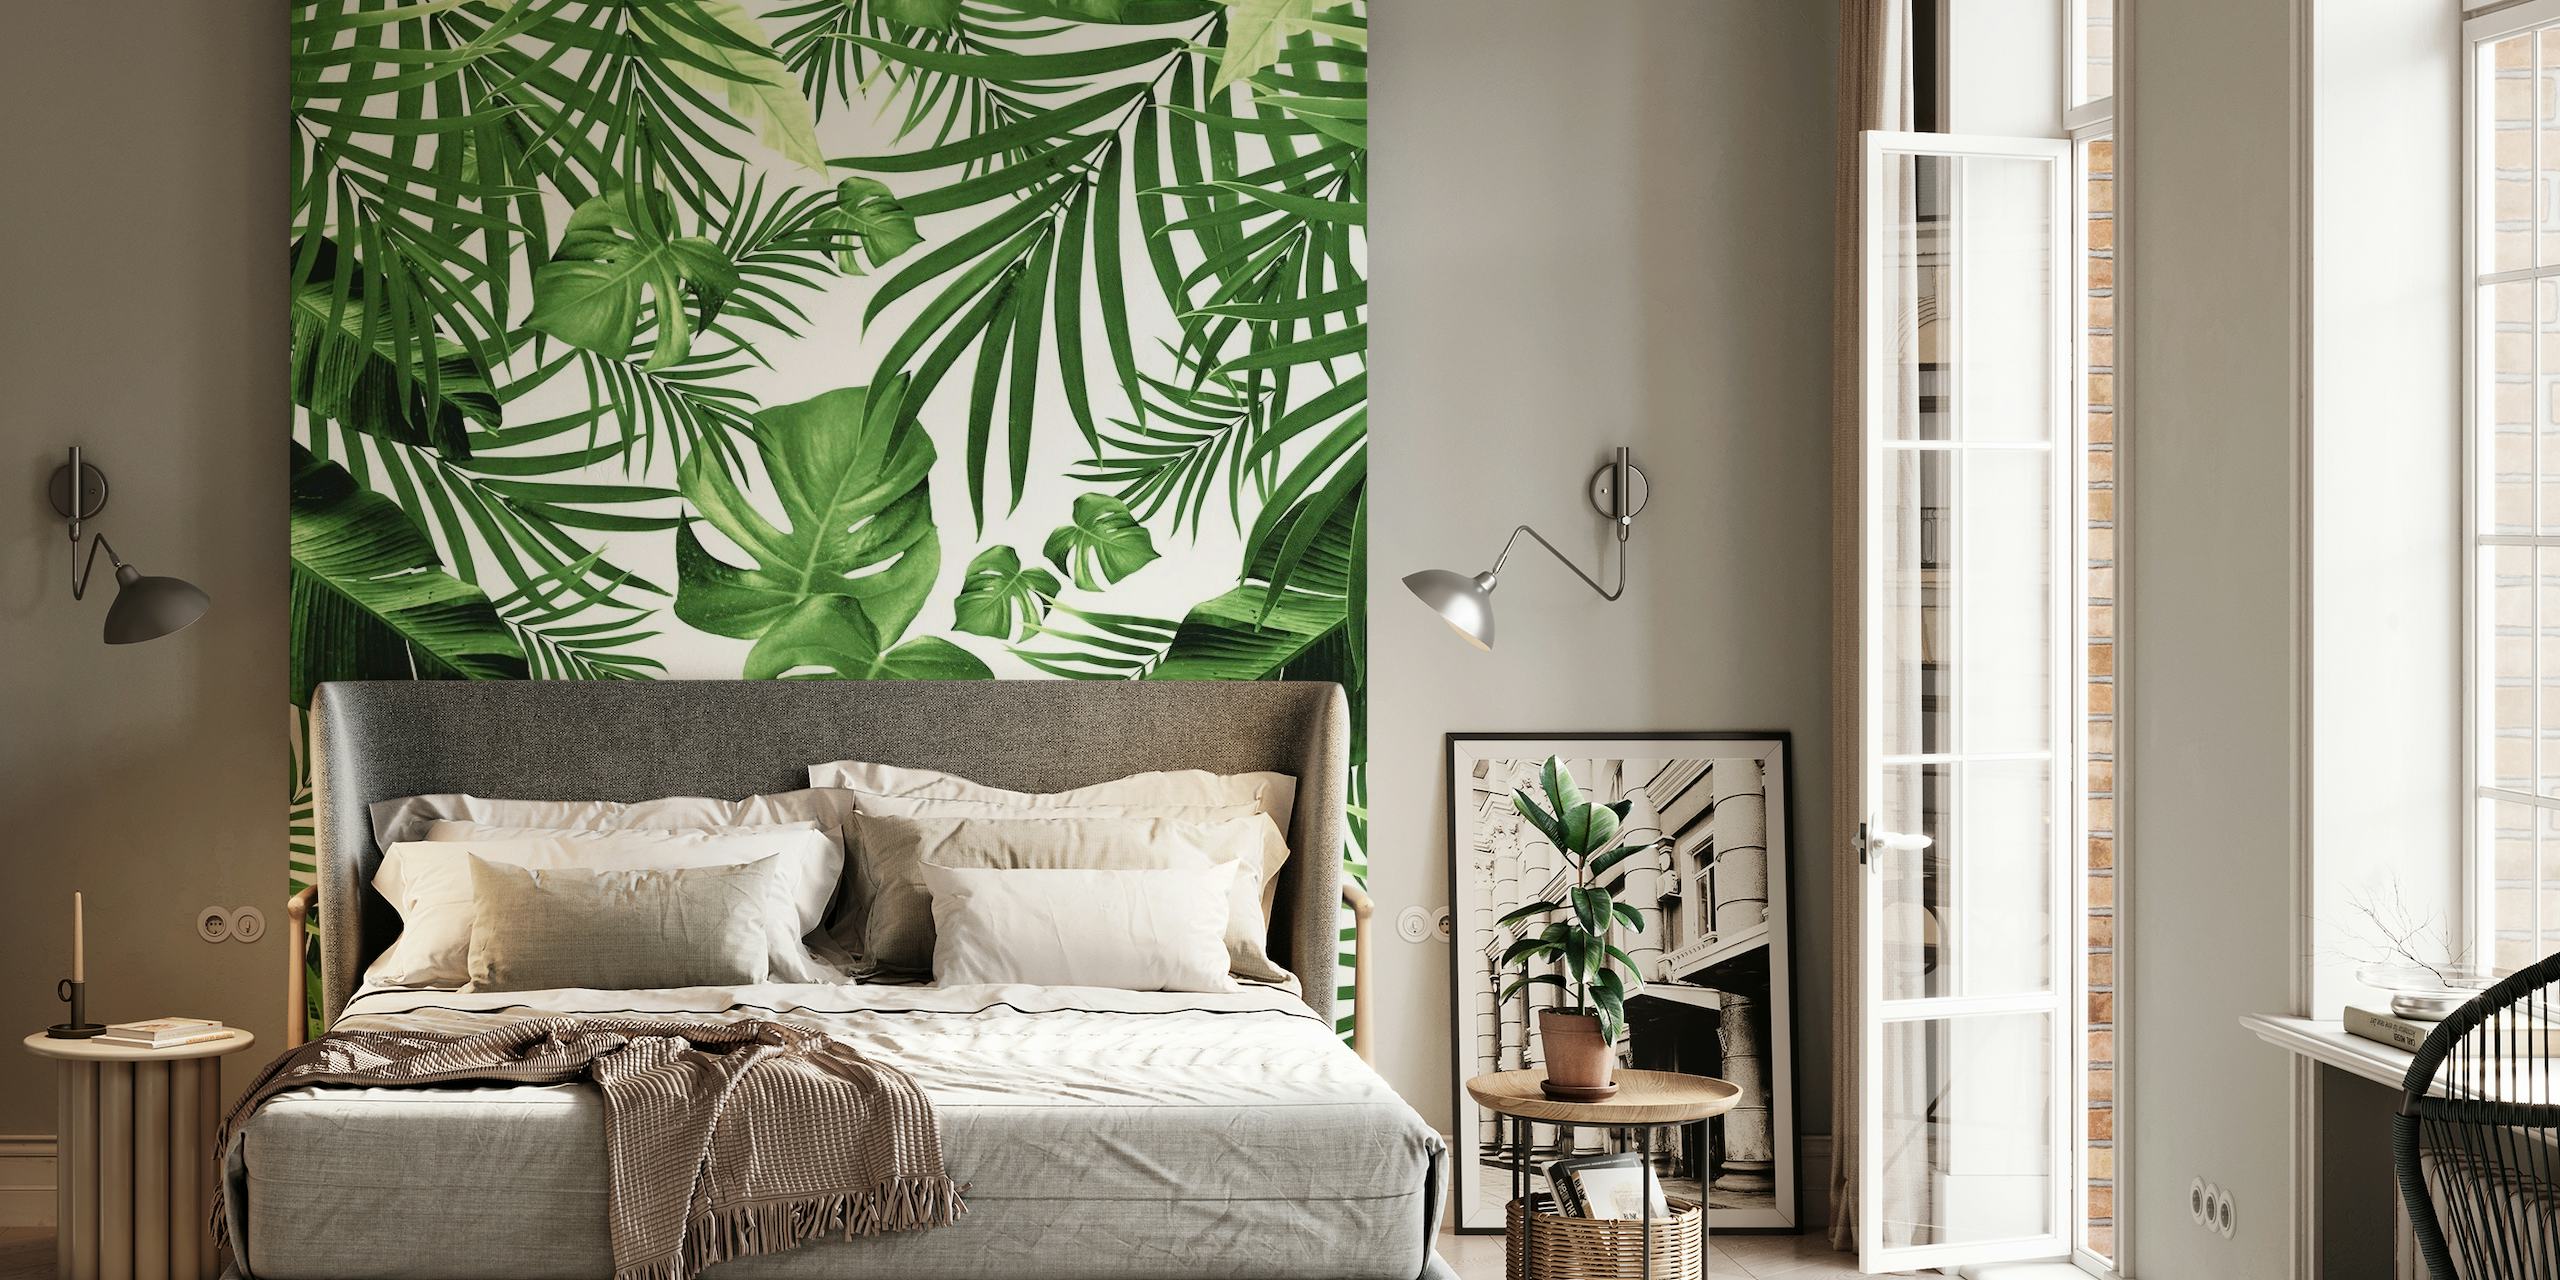 Tropisches Dschungel-Wandbild mit grünen Palmen und Monstera-Blättern